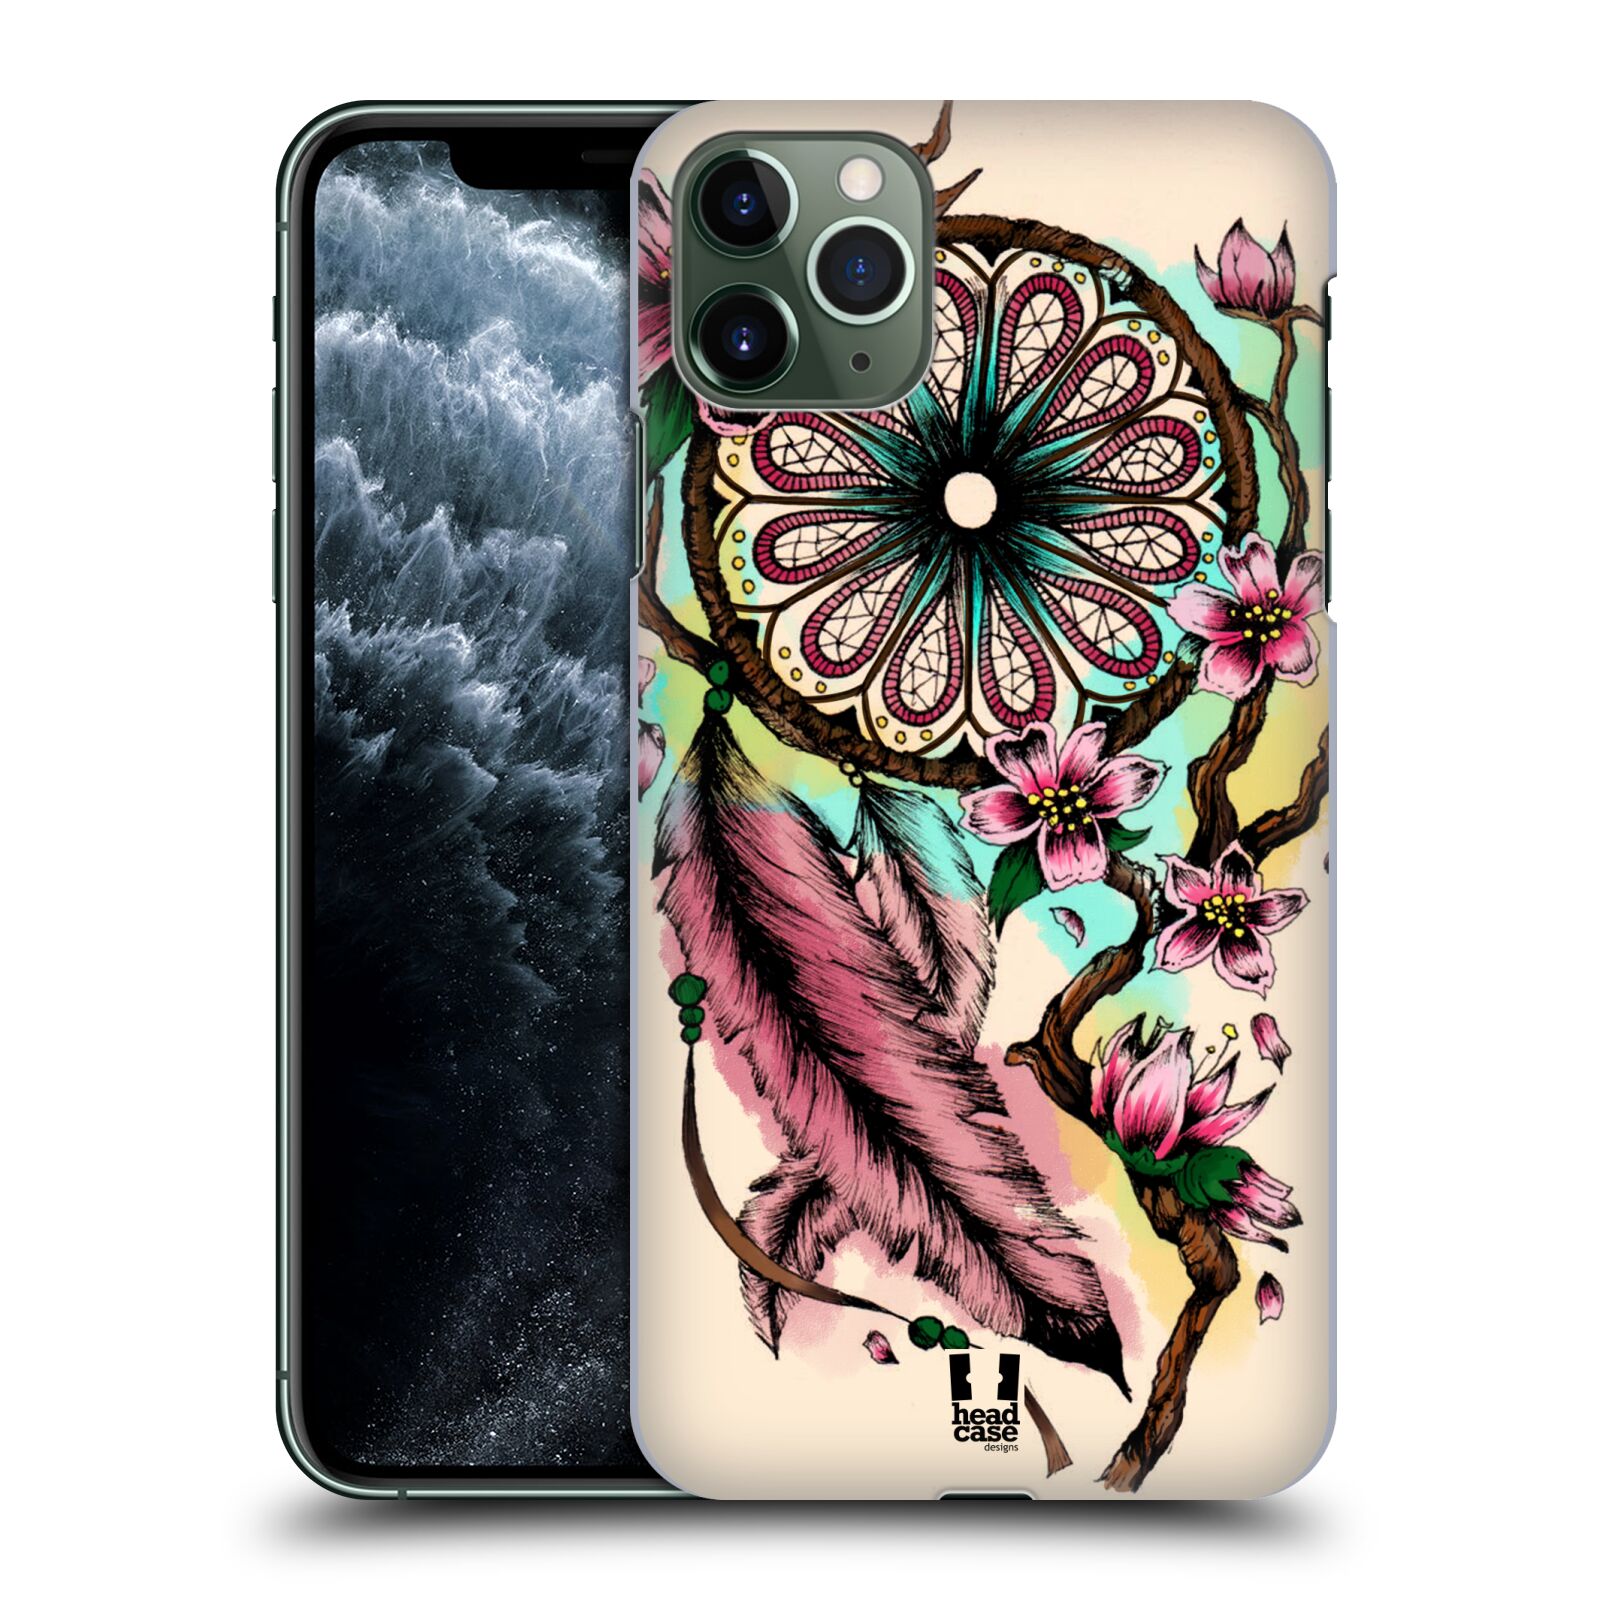 Pouzdro na mobil Apple Iphone 11 PRO MAX - HEAD CASE - vzor Květy lapač snů růžová